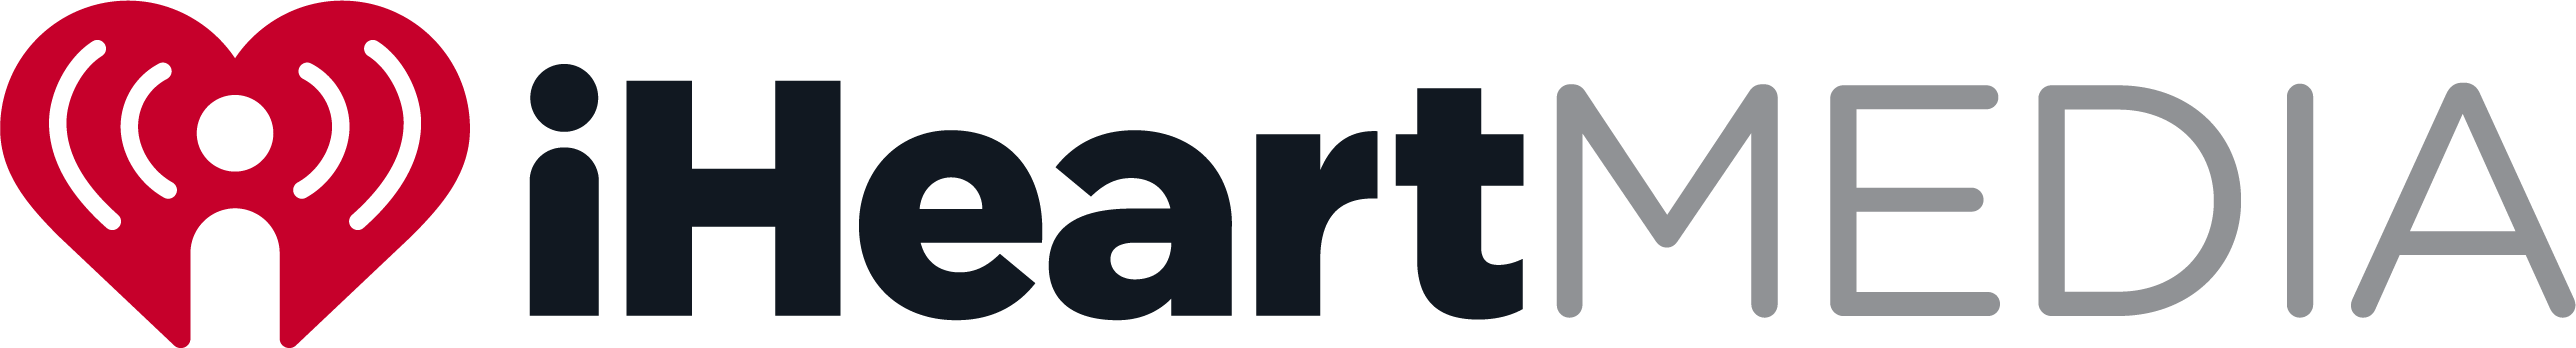 iHeartMEDIA logo